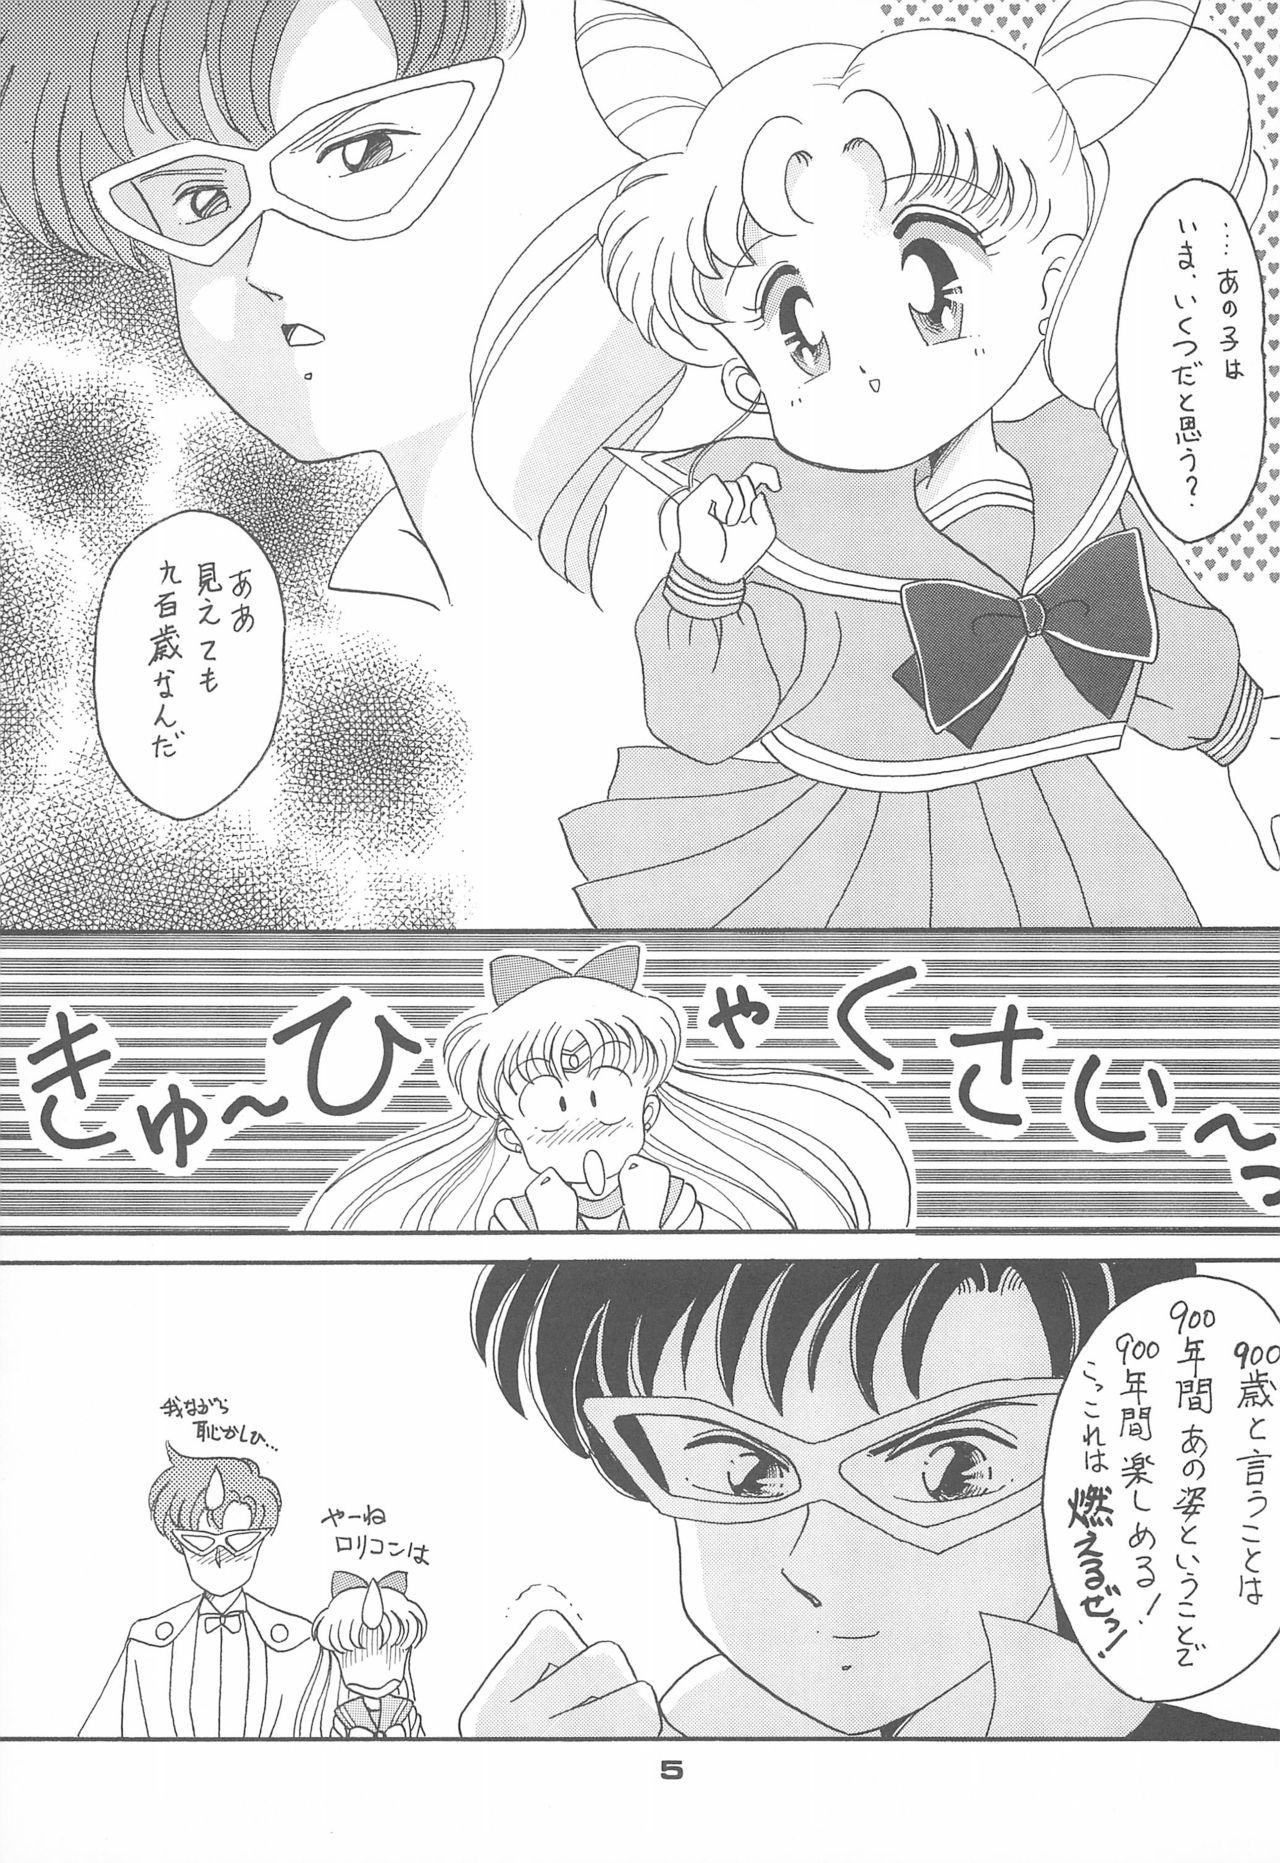 Best Blowjob Ponponpon 4 - Sailor moon Ecchi - Page 7